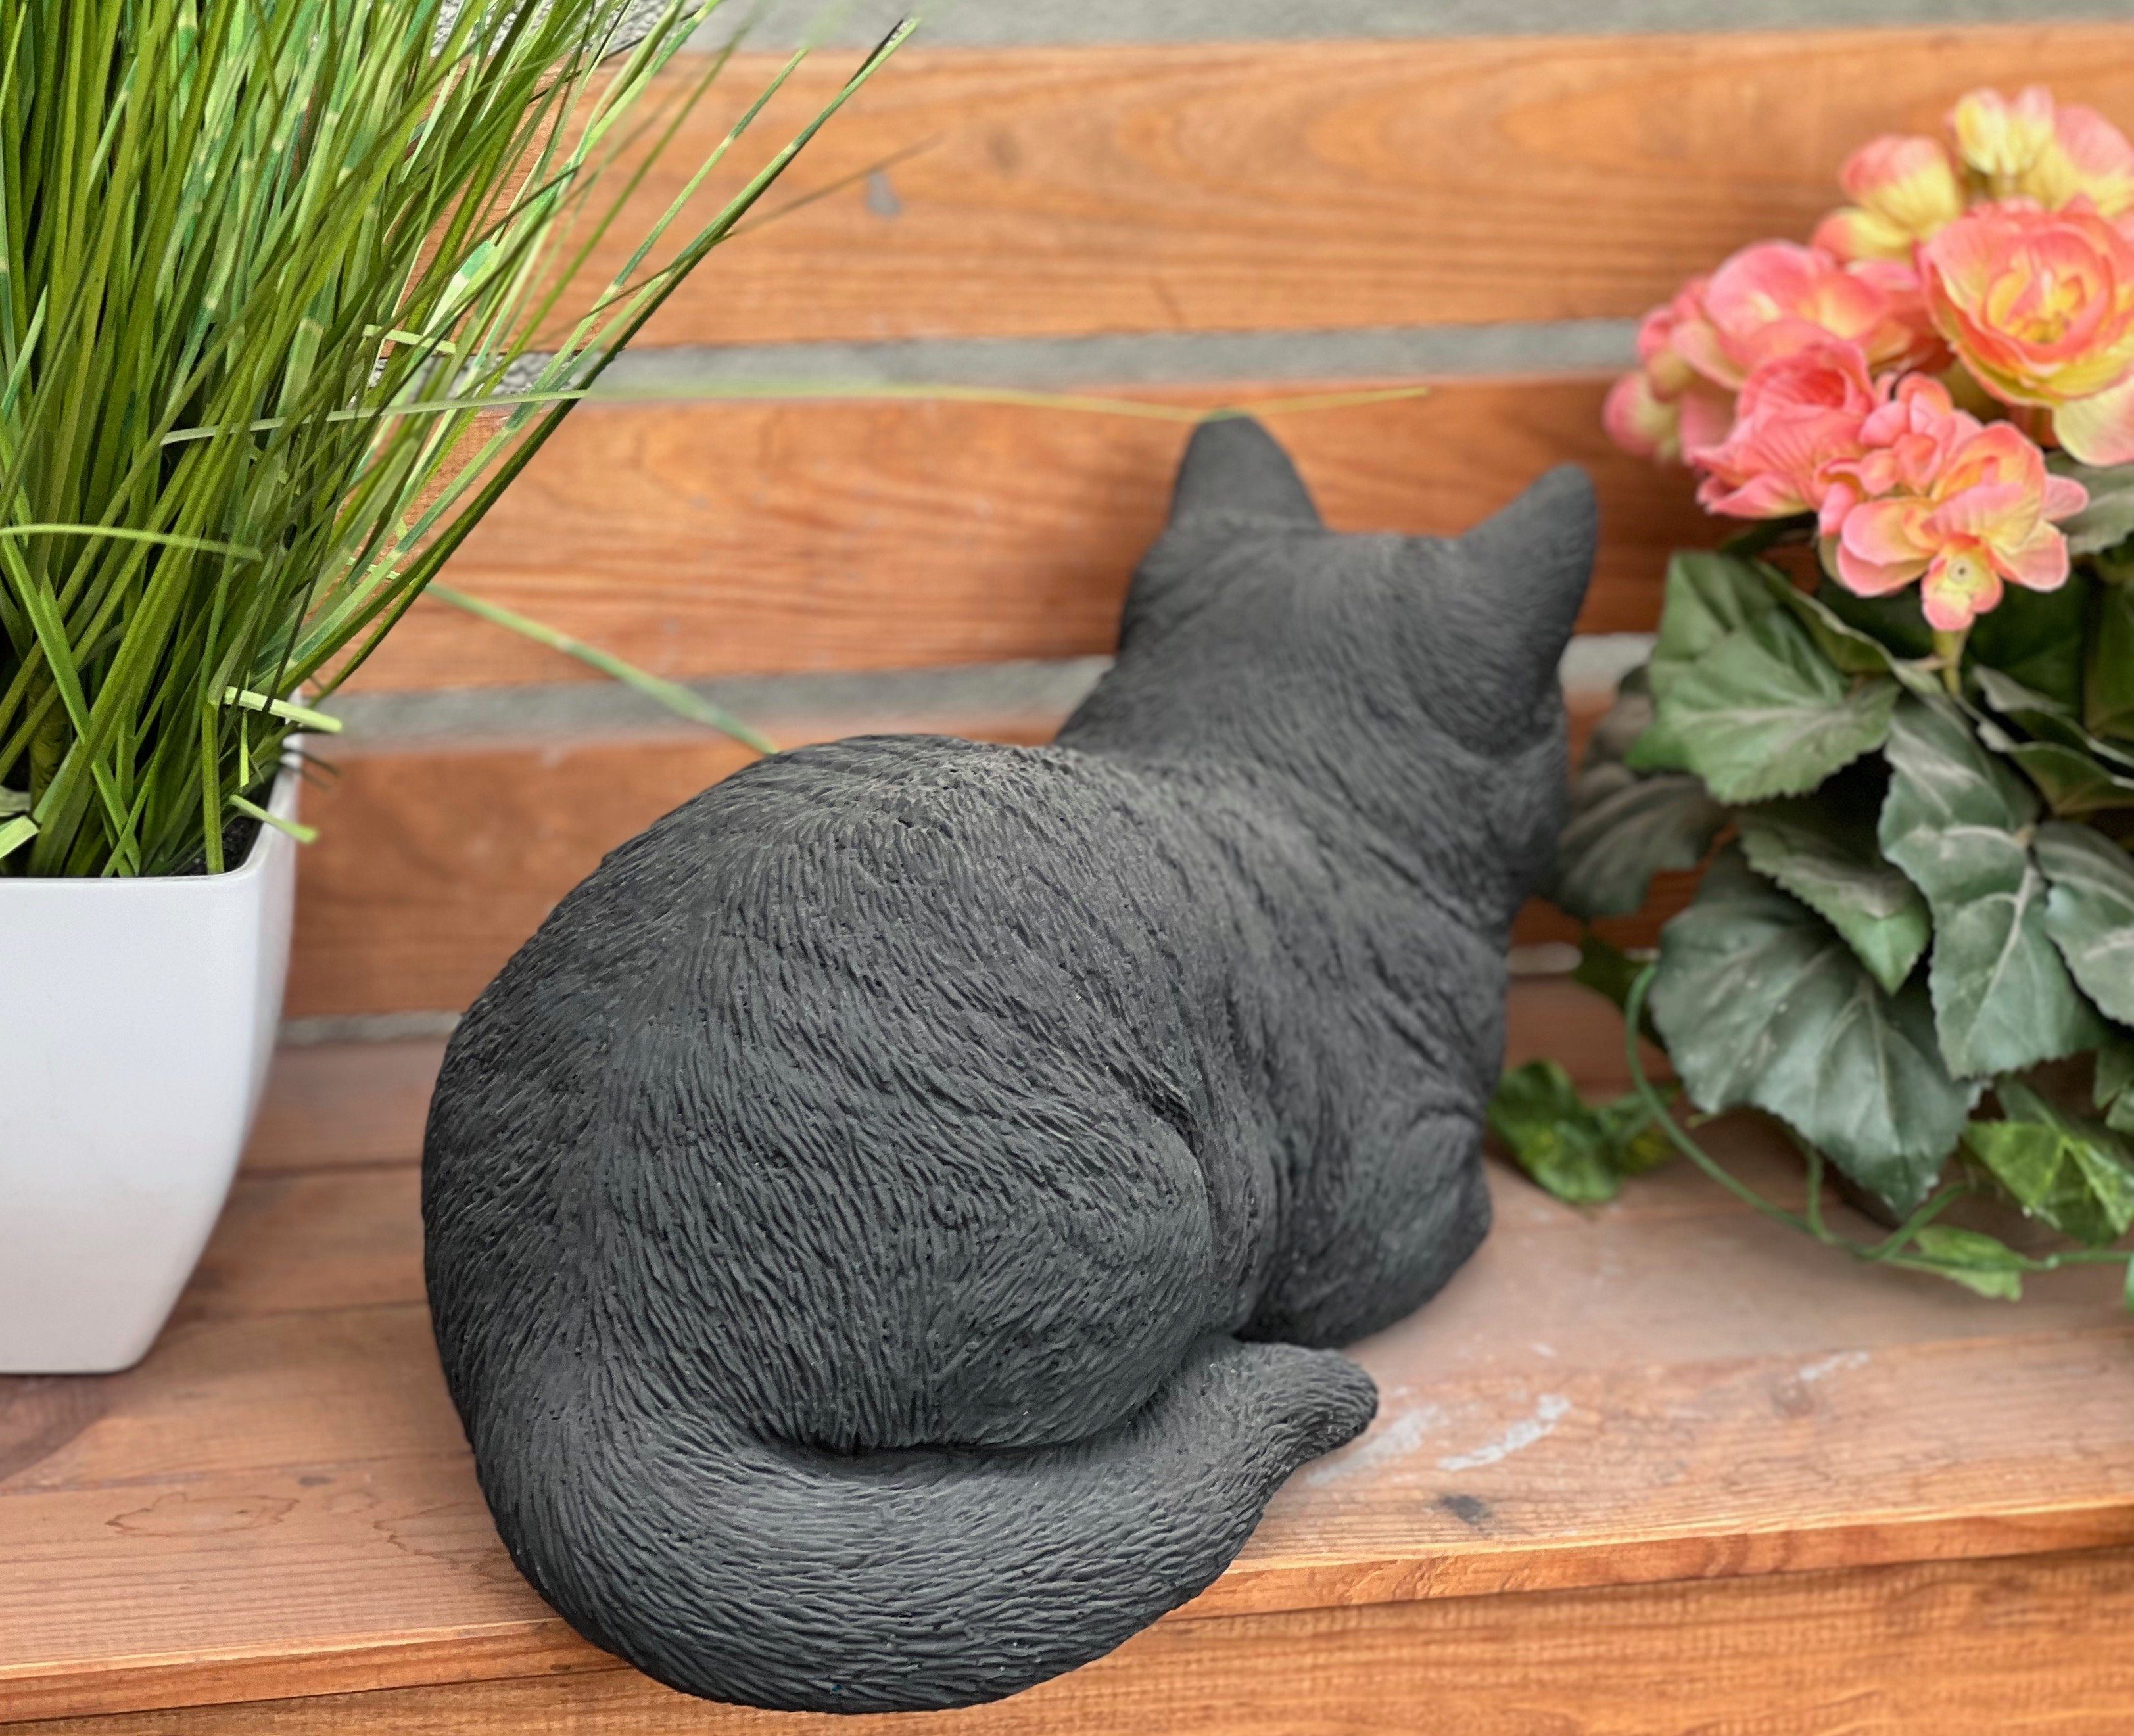 Style Träumerle 36 cm ca. Steinfigur schwarze Katze and frostfest Gartenfigur Stone Länge große